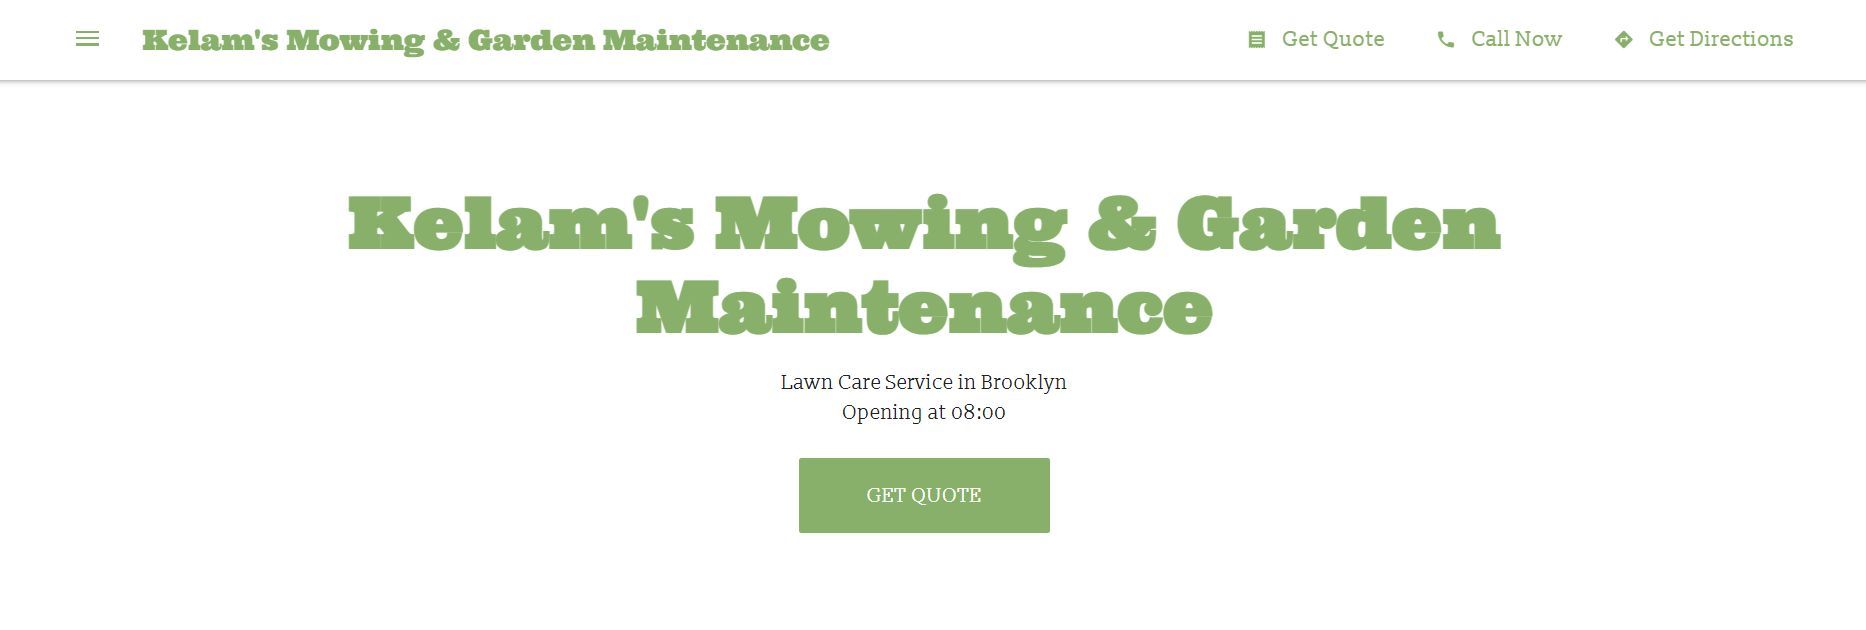 kelam s mowing & garden maintenance lawn care service in brooklyn 2023 10 19 22 47 17